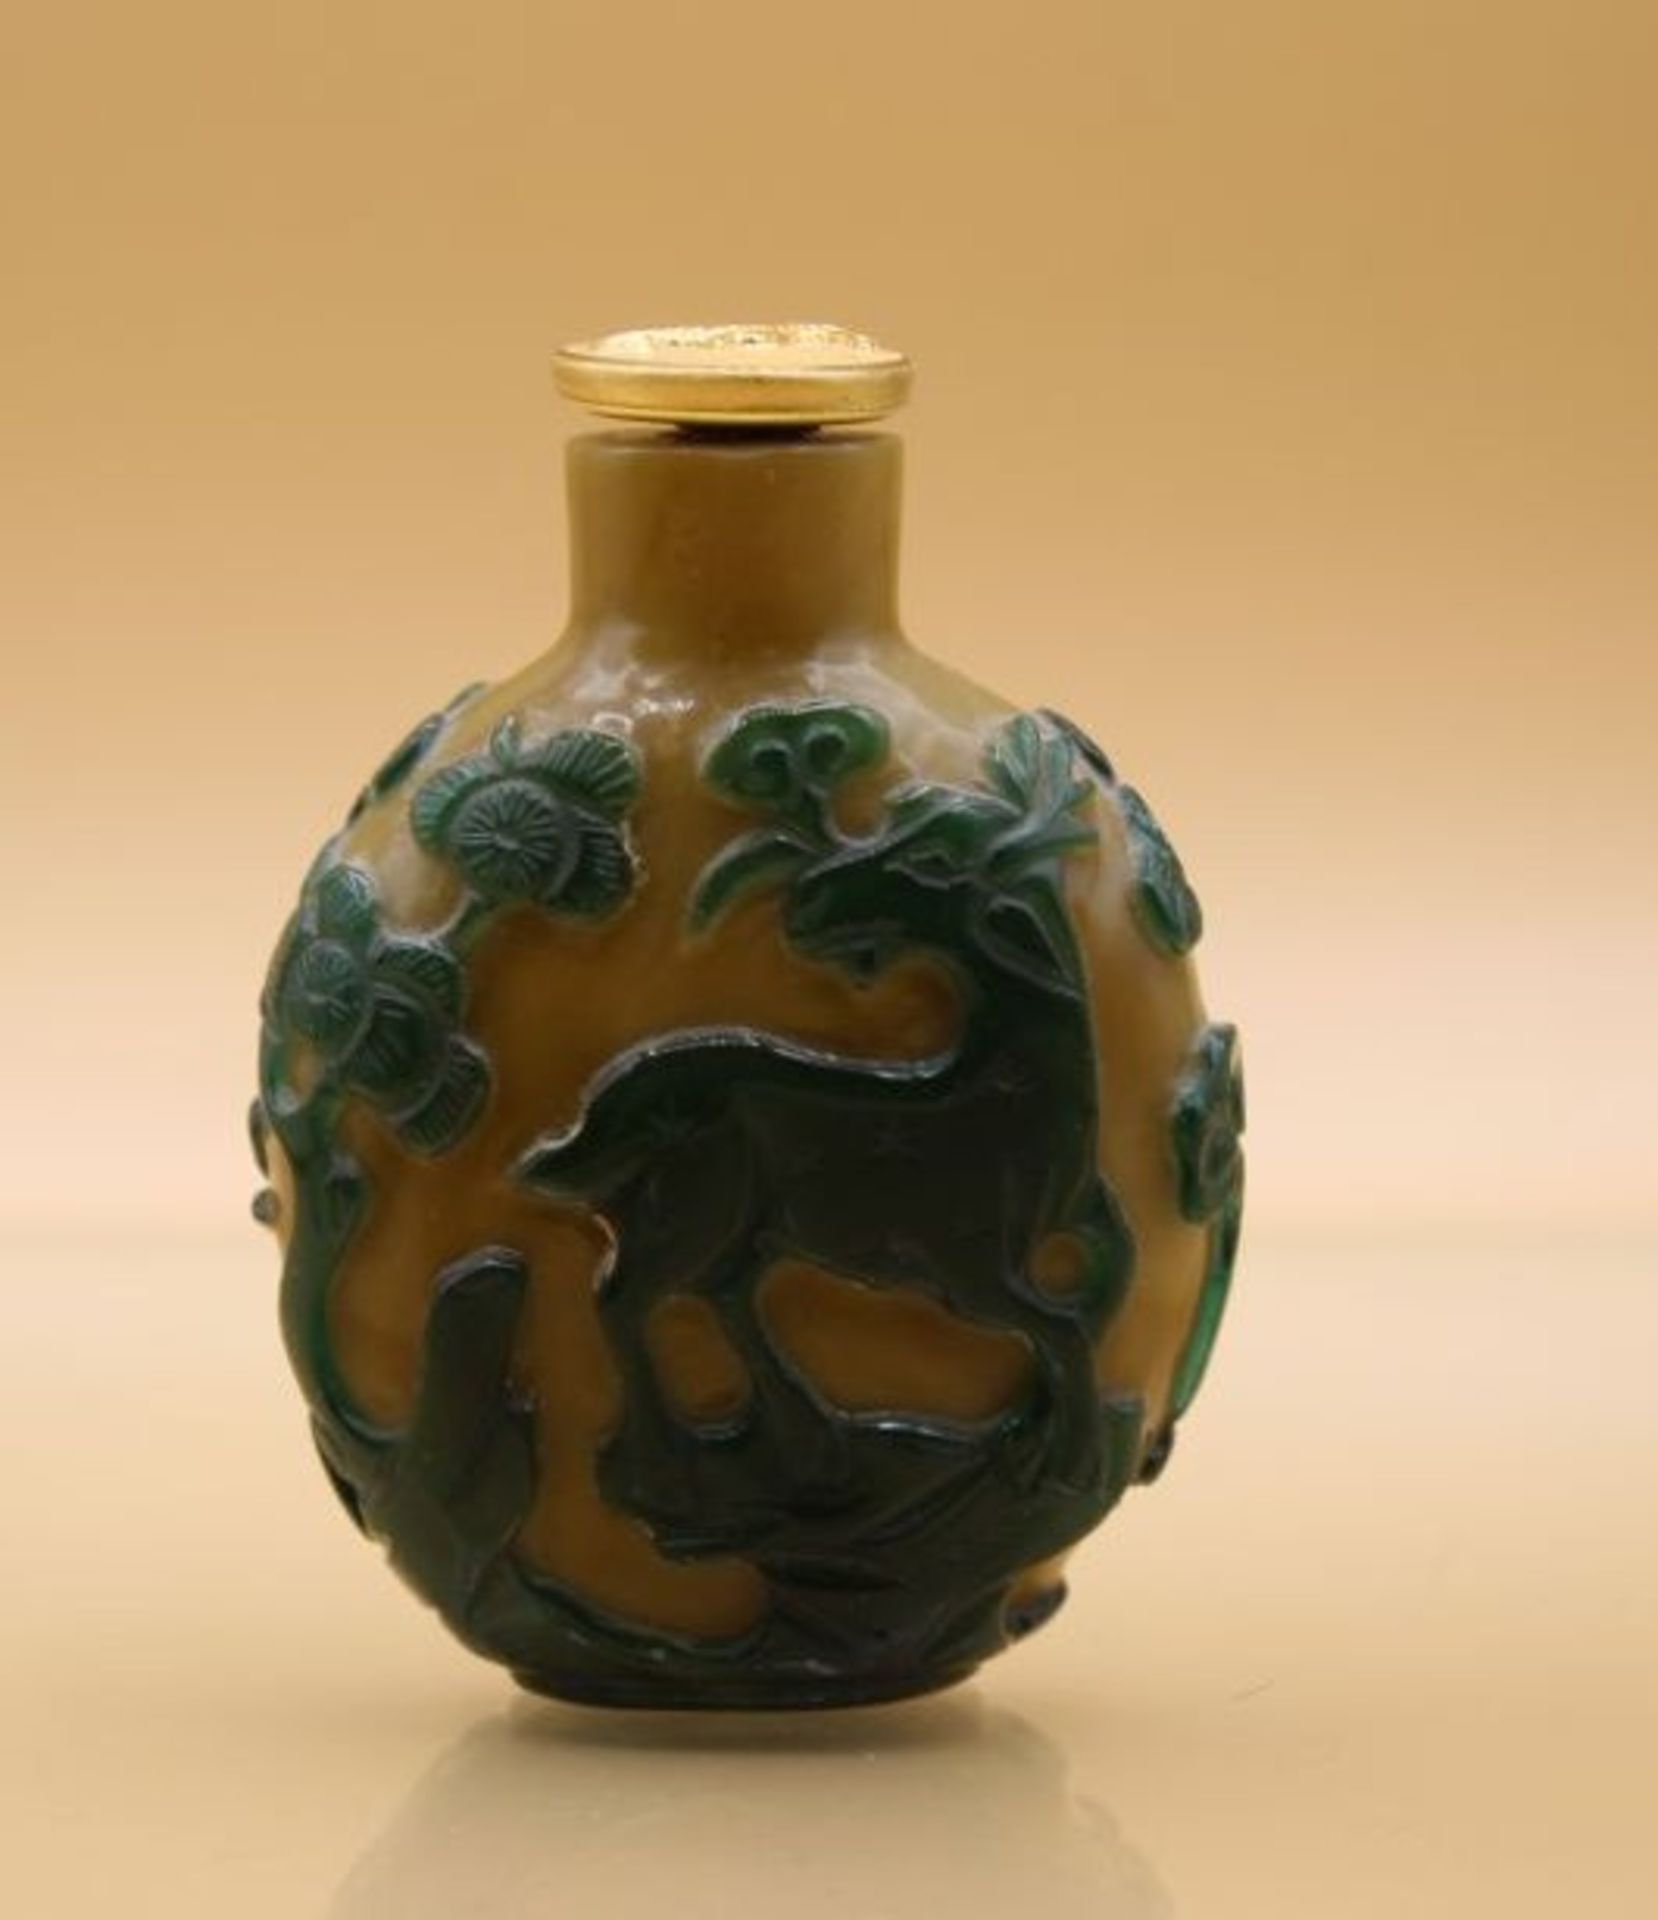 fein gearbeitete Snuff-Bottle, China, wohl 18./19. Jhd., geschnittene Tierdarstellungen, H-6cm. - Bild 3 aus 5